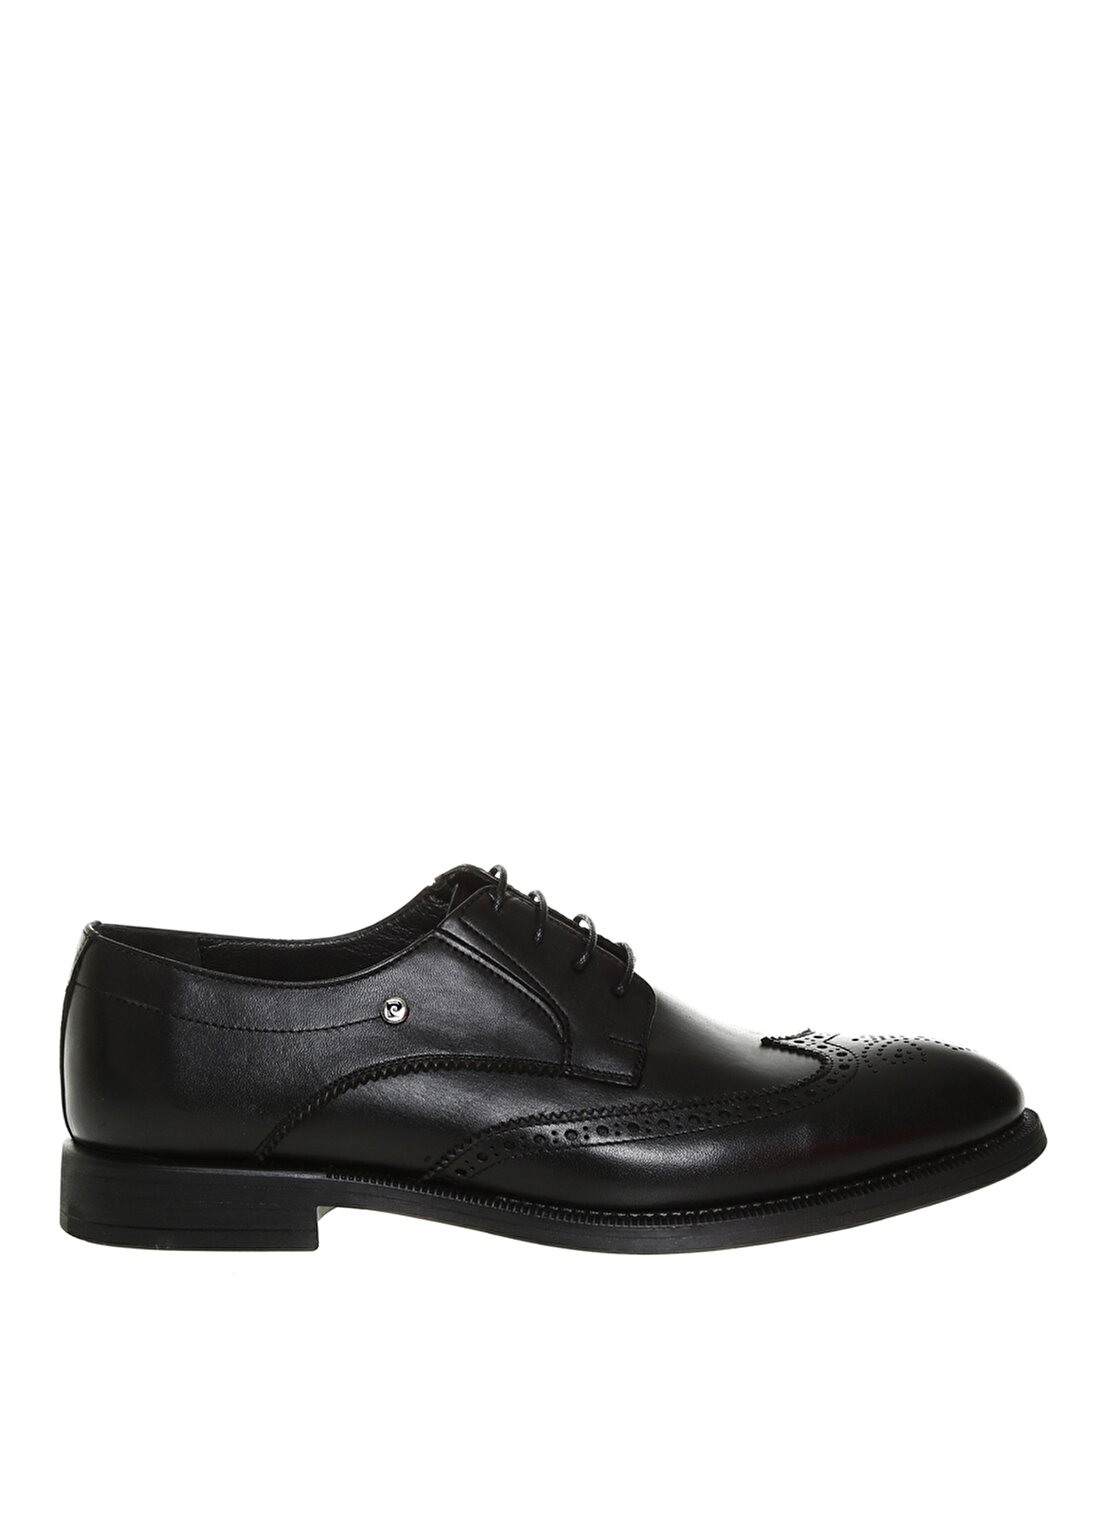 Pierre Cardin Erkek Deri Oxford Siyah Klasik Ayakkabı